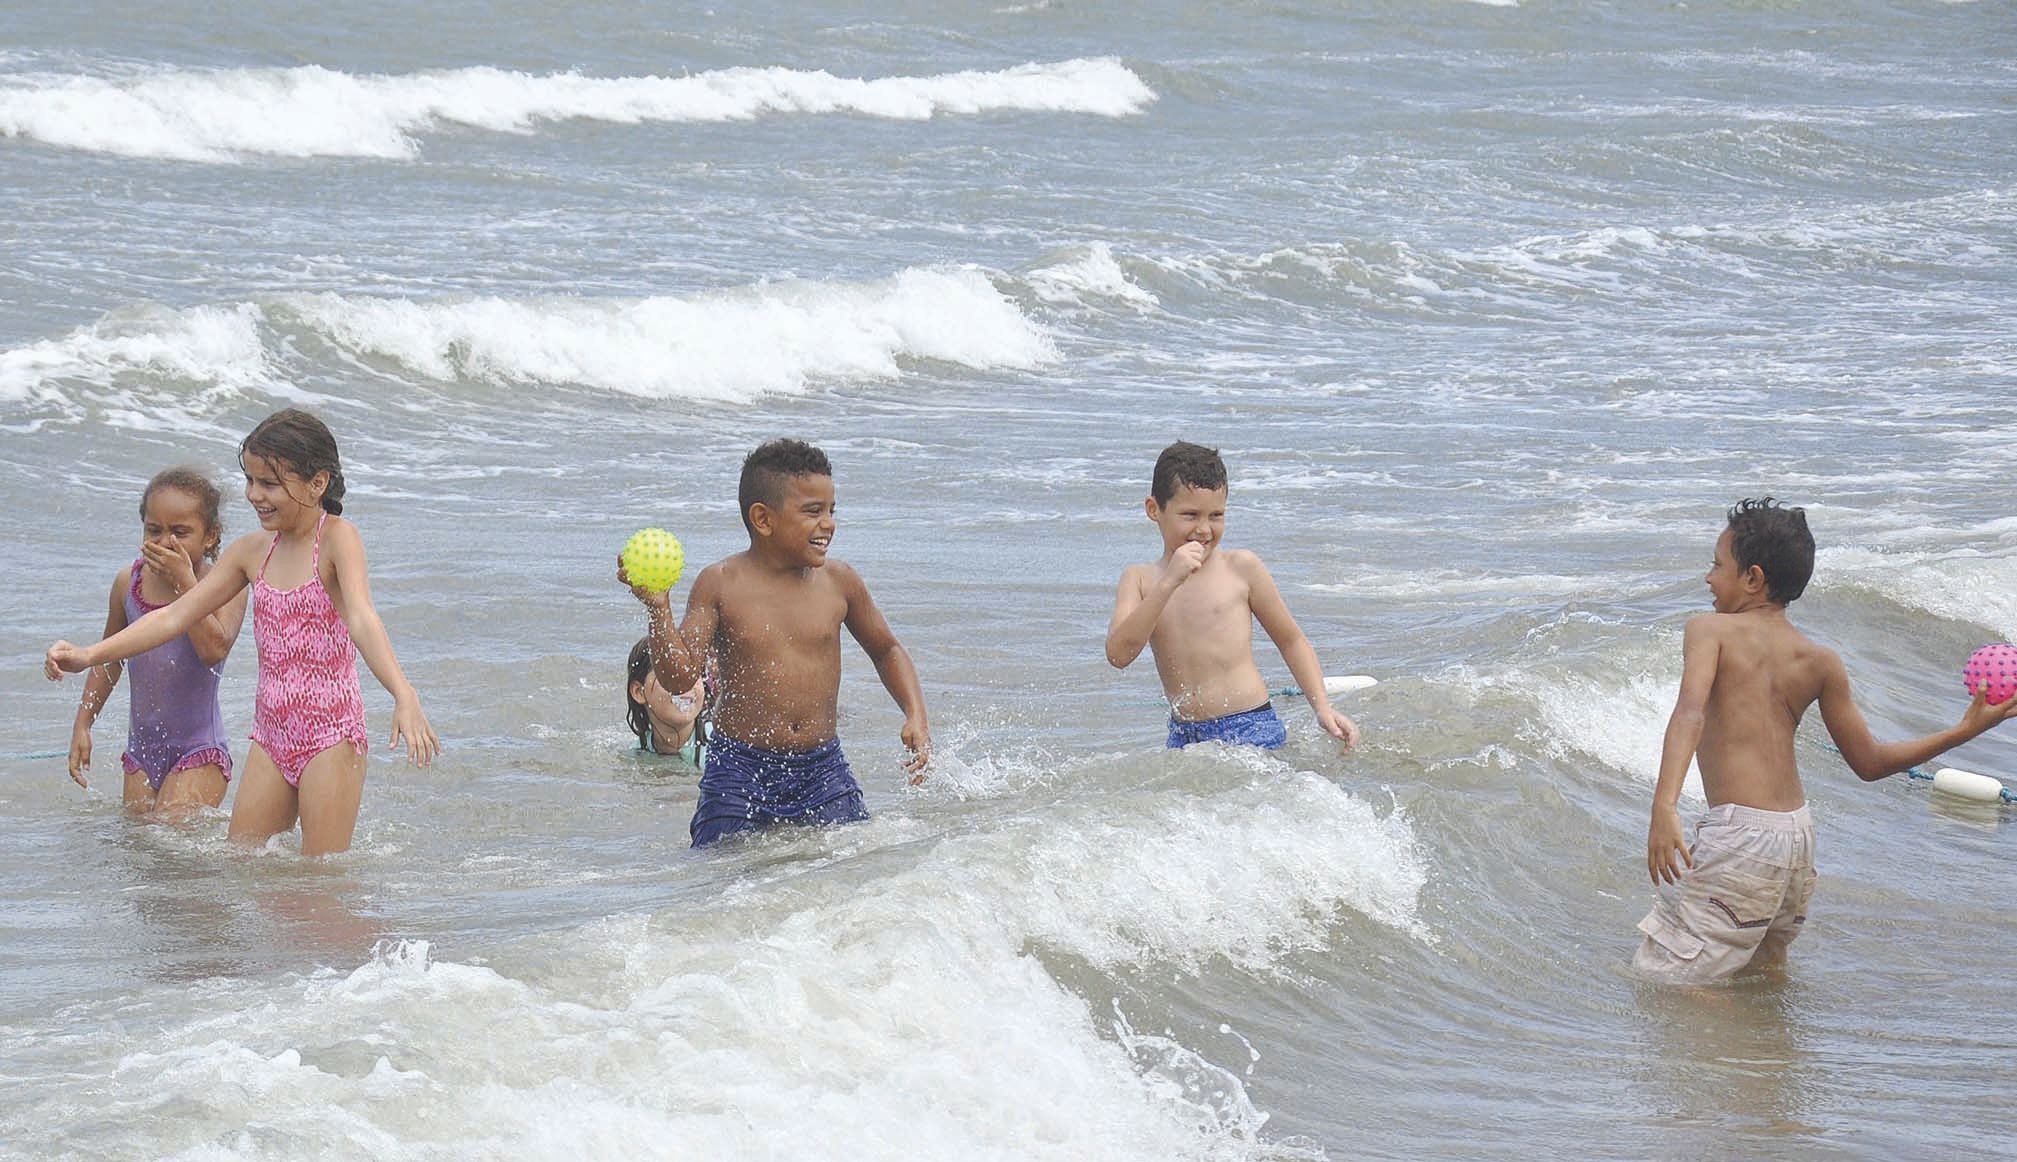 En raison d’un vent très soutenu, le match de water-polo, prévu initialement, a été annulé et remplacé par une séance baignade où les enfants se sont éclatés dans les vagues.